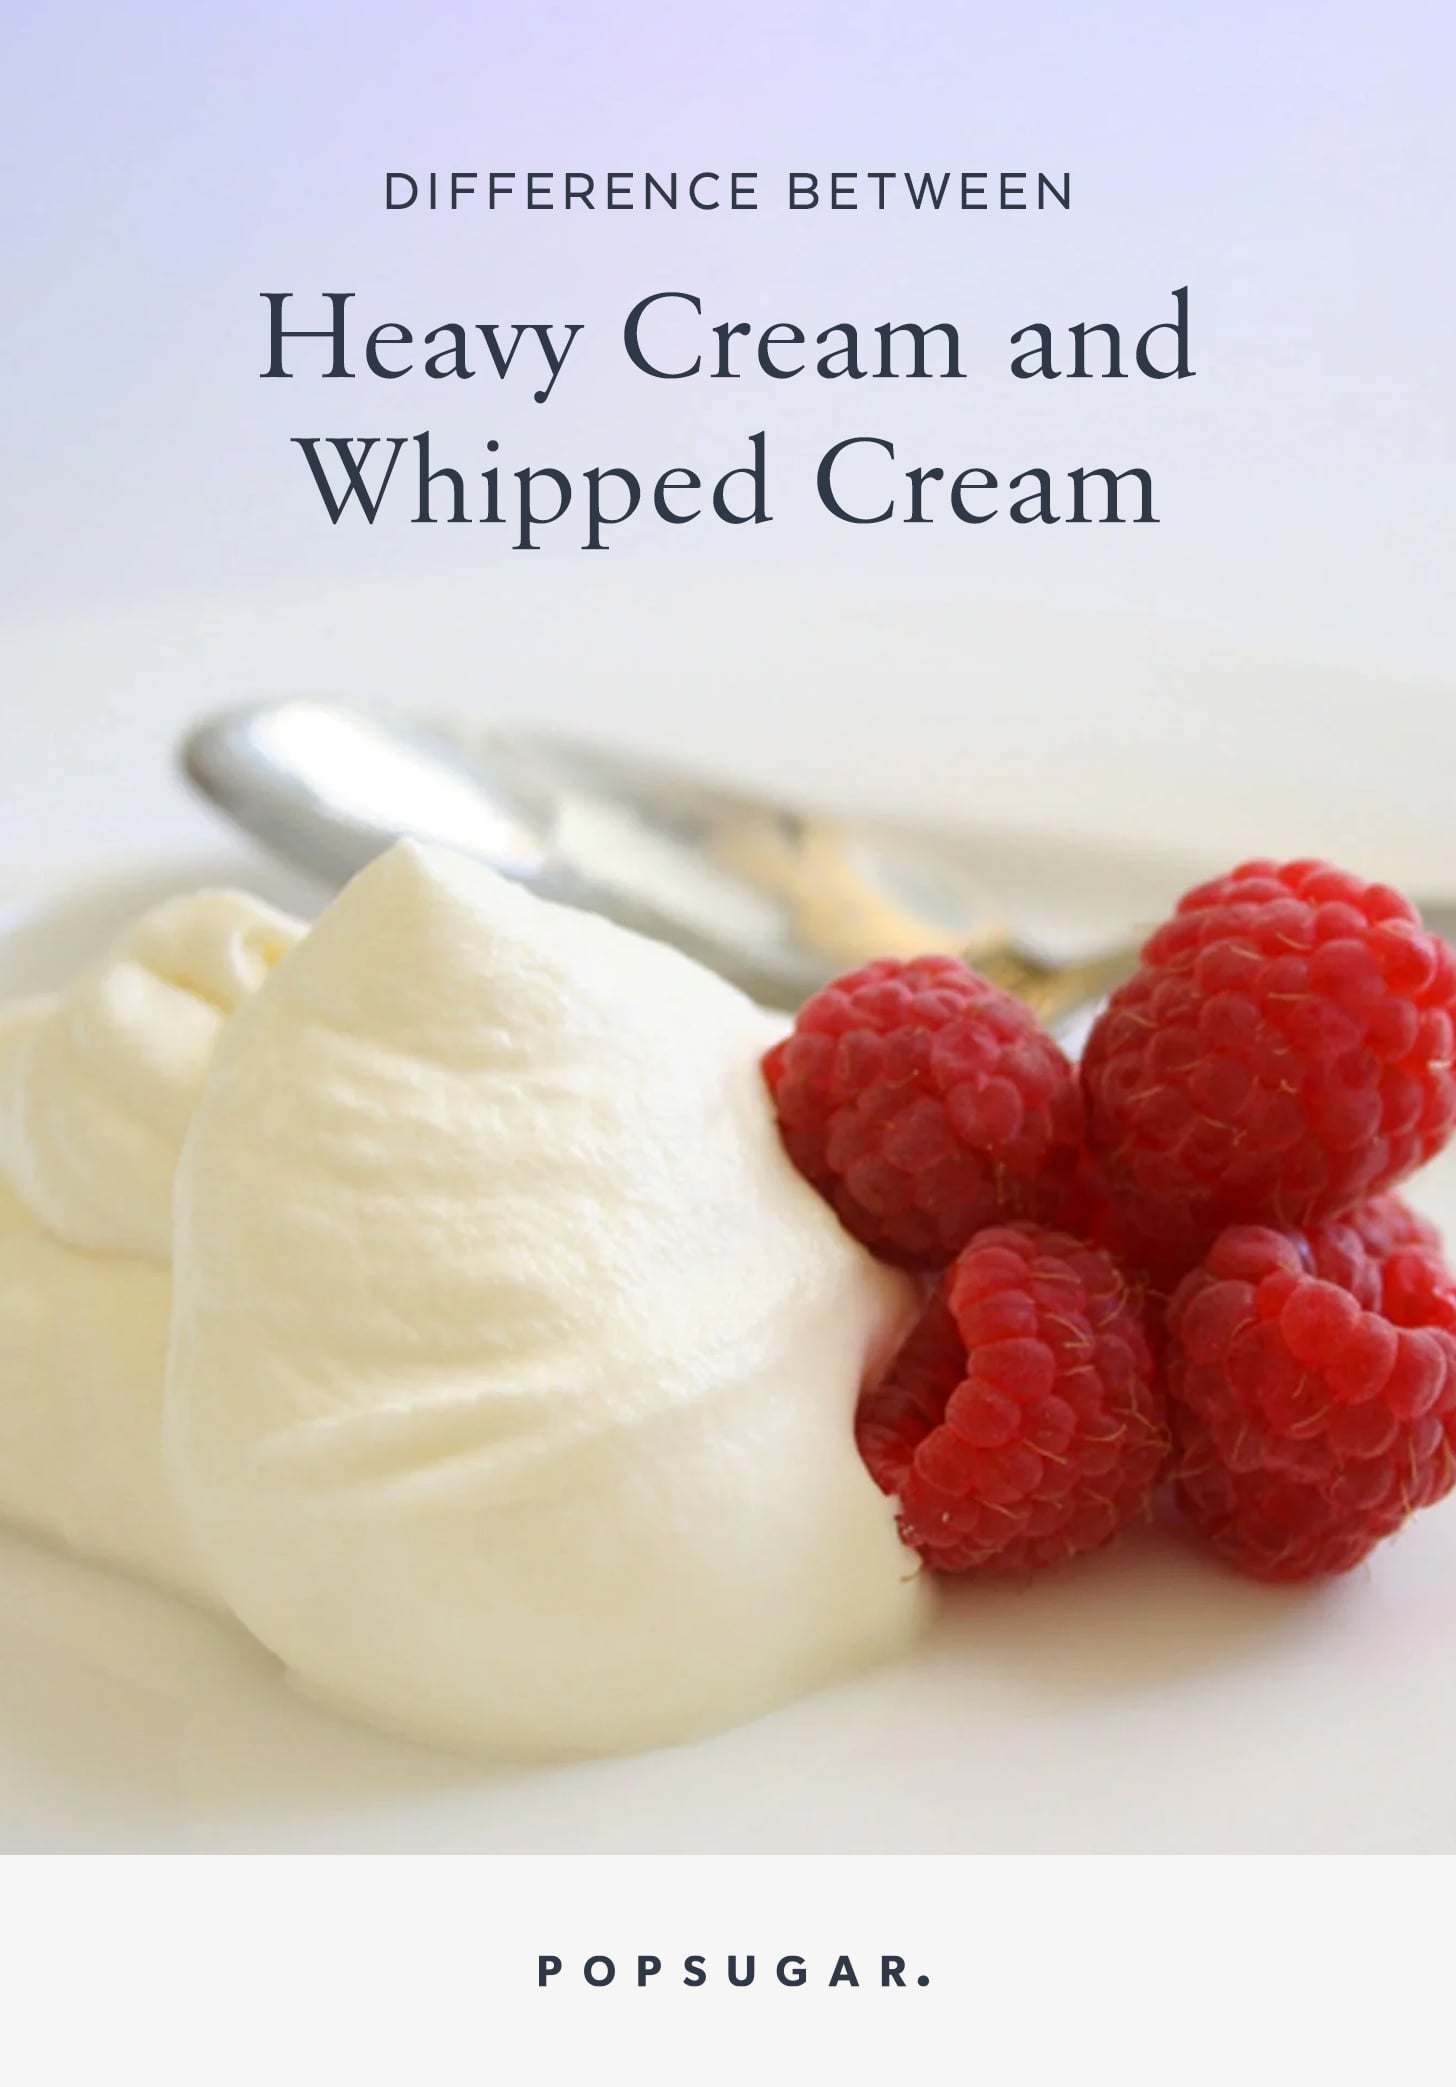 Cost of heavy cream